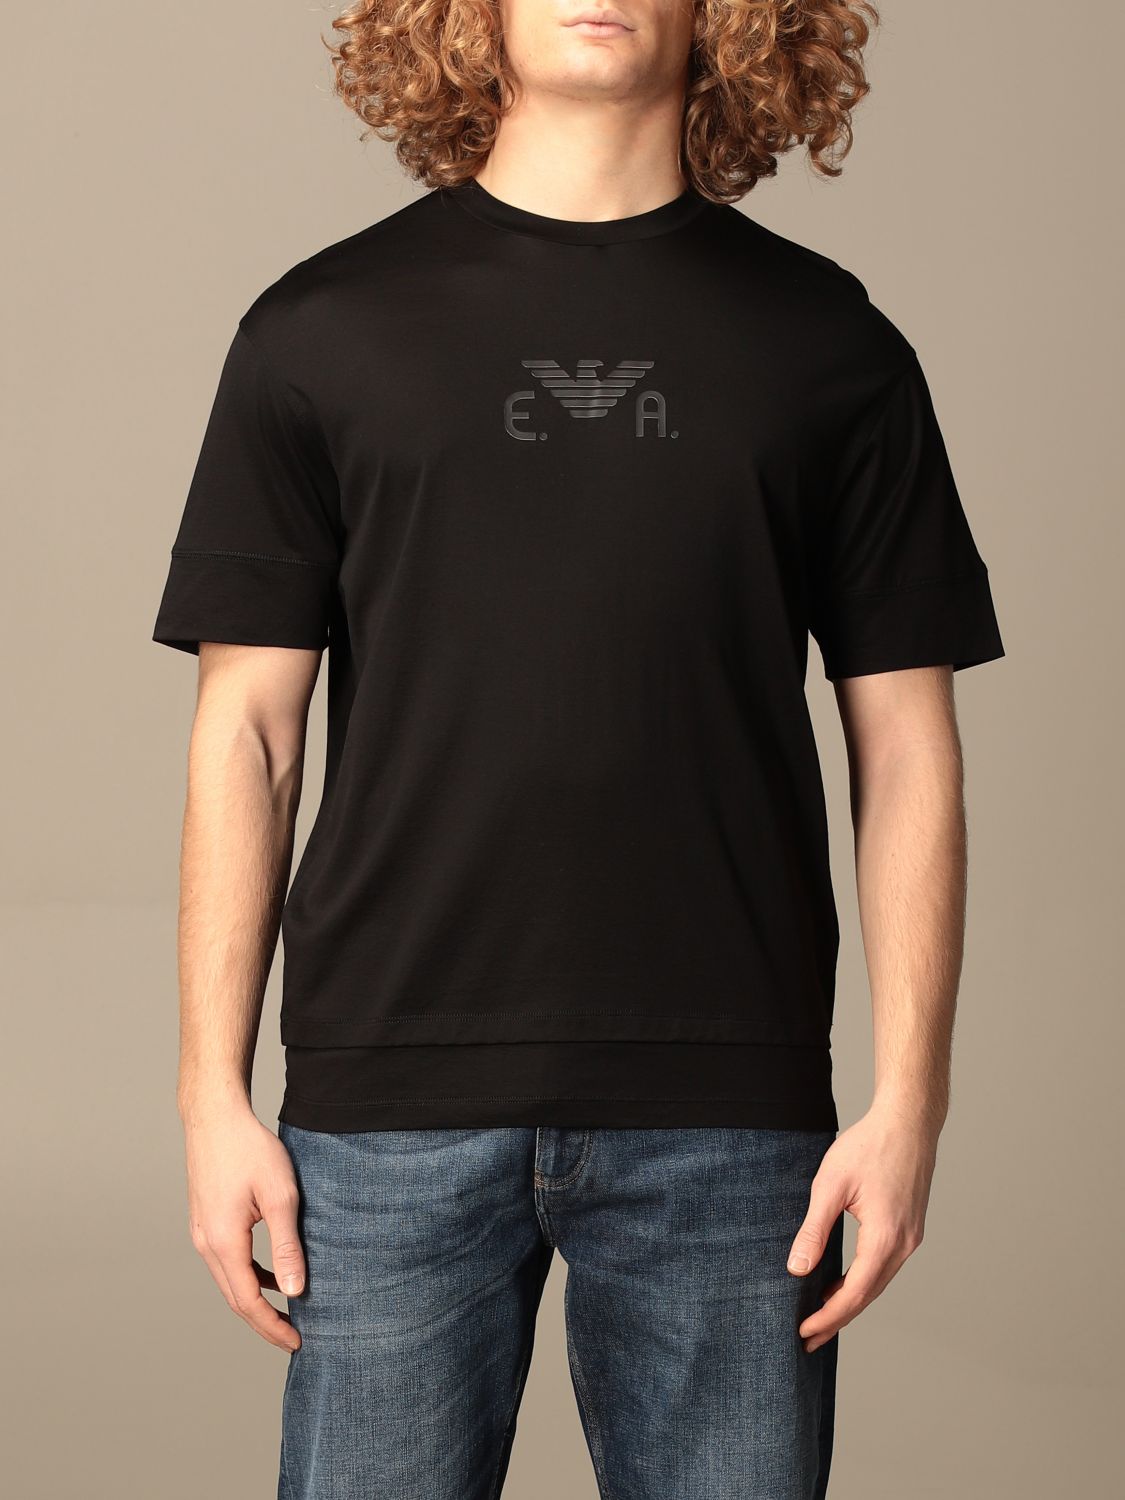 エンポリオアルマーニ(EMPORIO ARMANI): Tシャツ メンズ - ブラック | Tシャツ エンポリオアルマーニ 3K1TF6